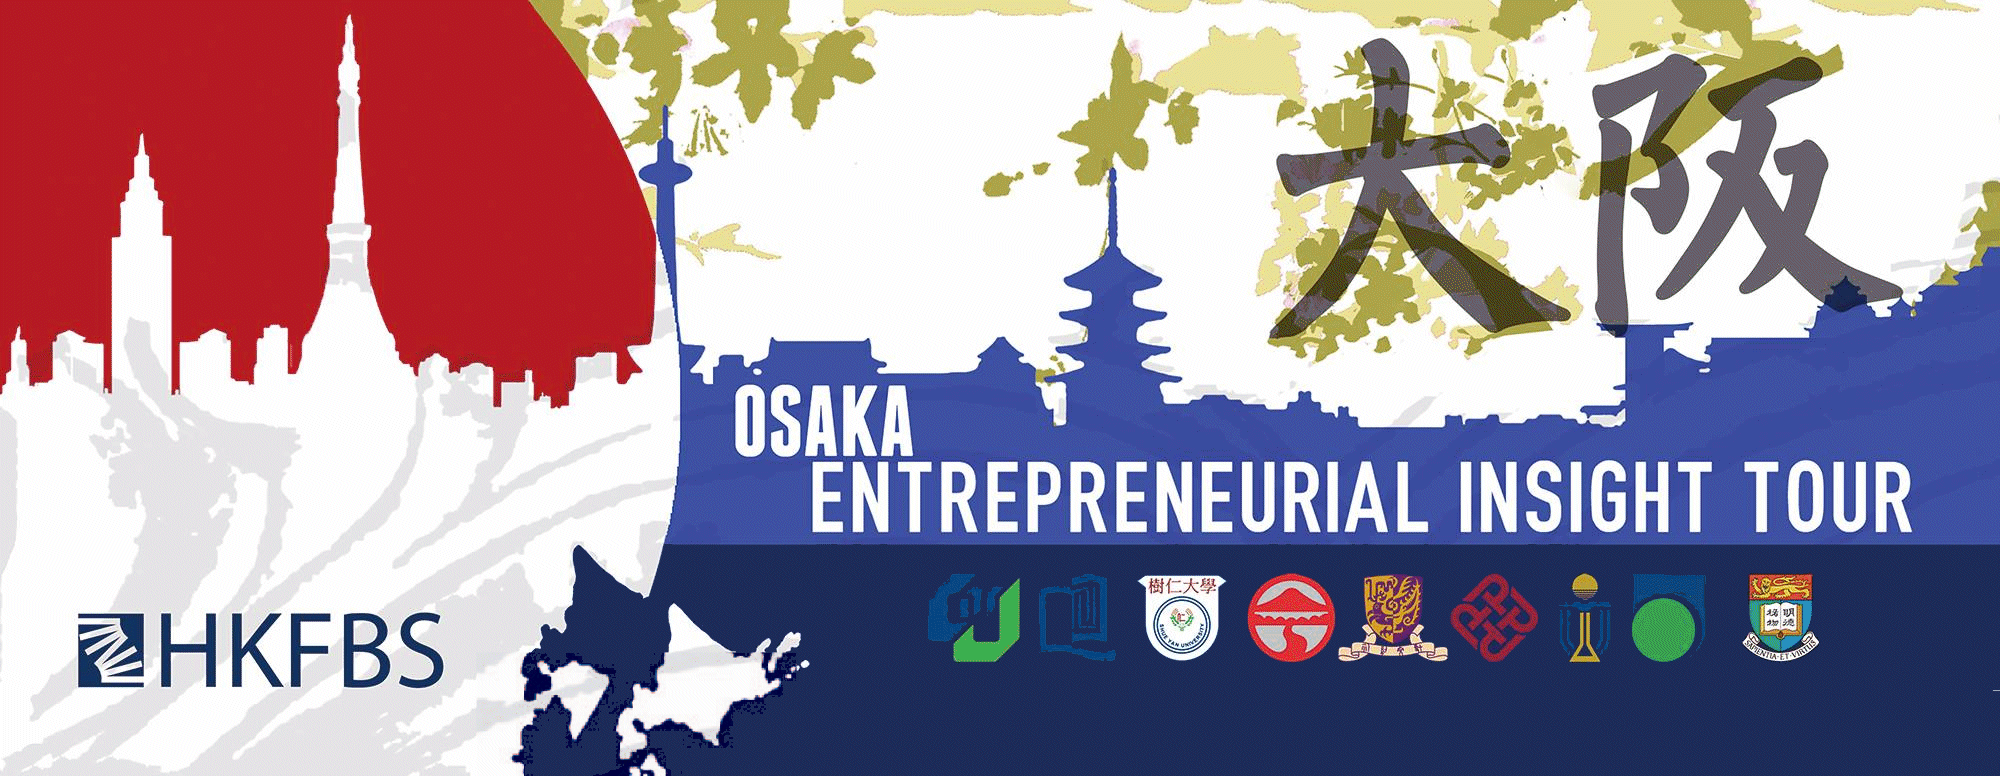 聯校大專商學院學會日本大阪之旅2015